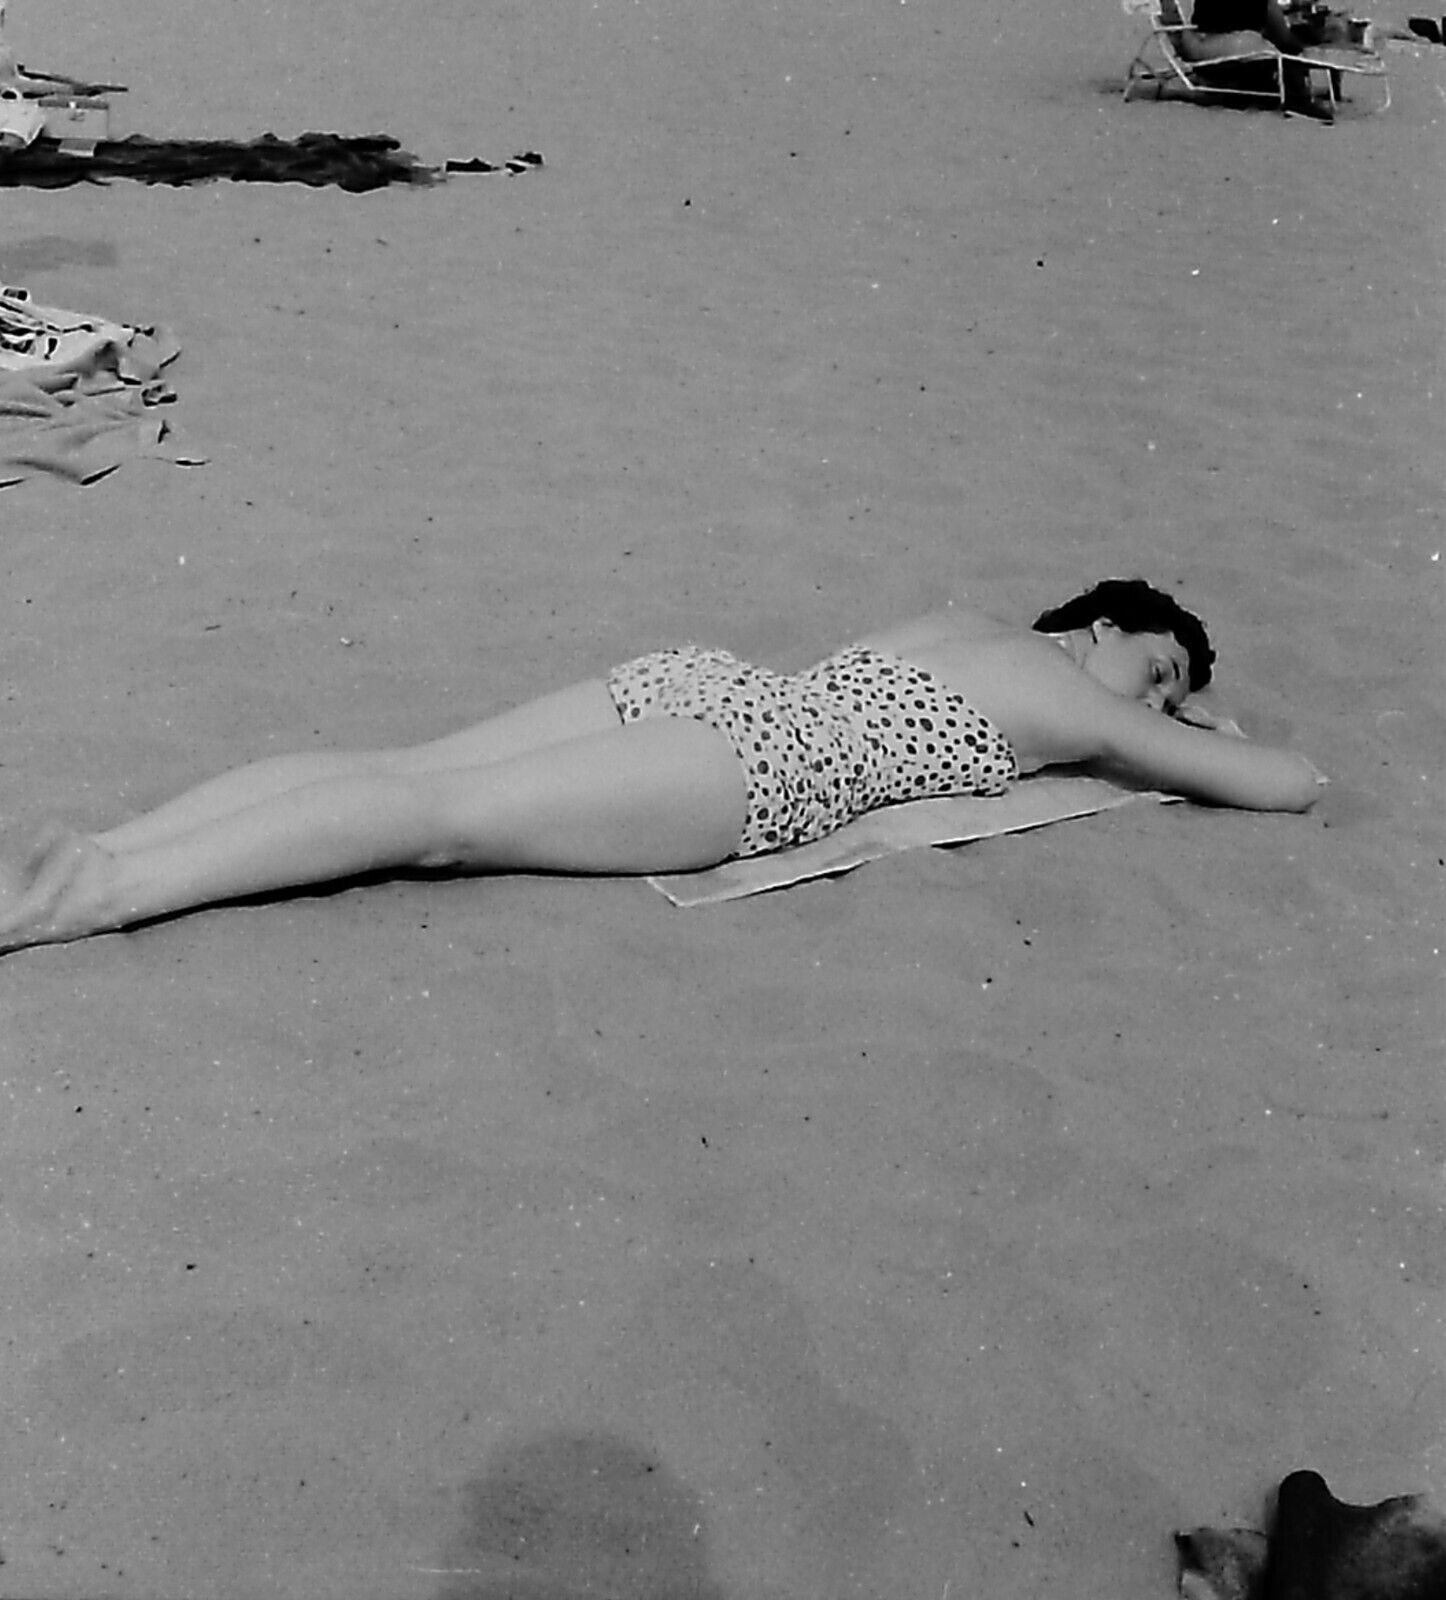 VTG 1950s MEDIUM FORMAT NEGATIVE BEACH SCENE BRUNETTE POLKA DOT SWIMSUIT 161-1